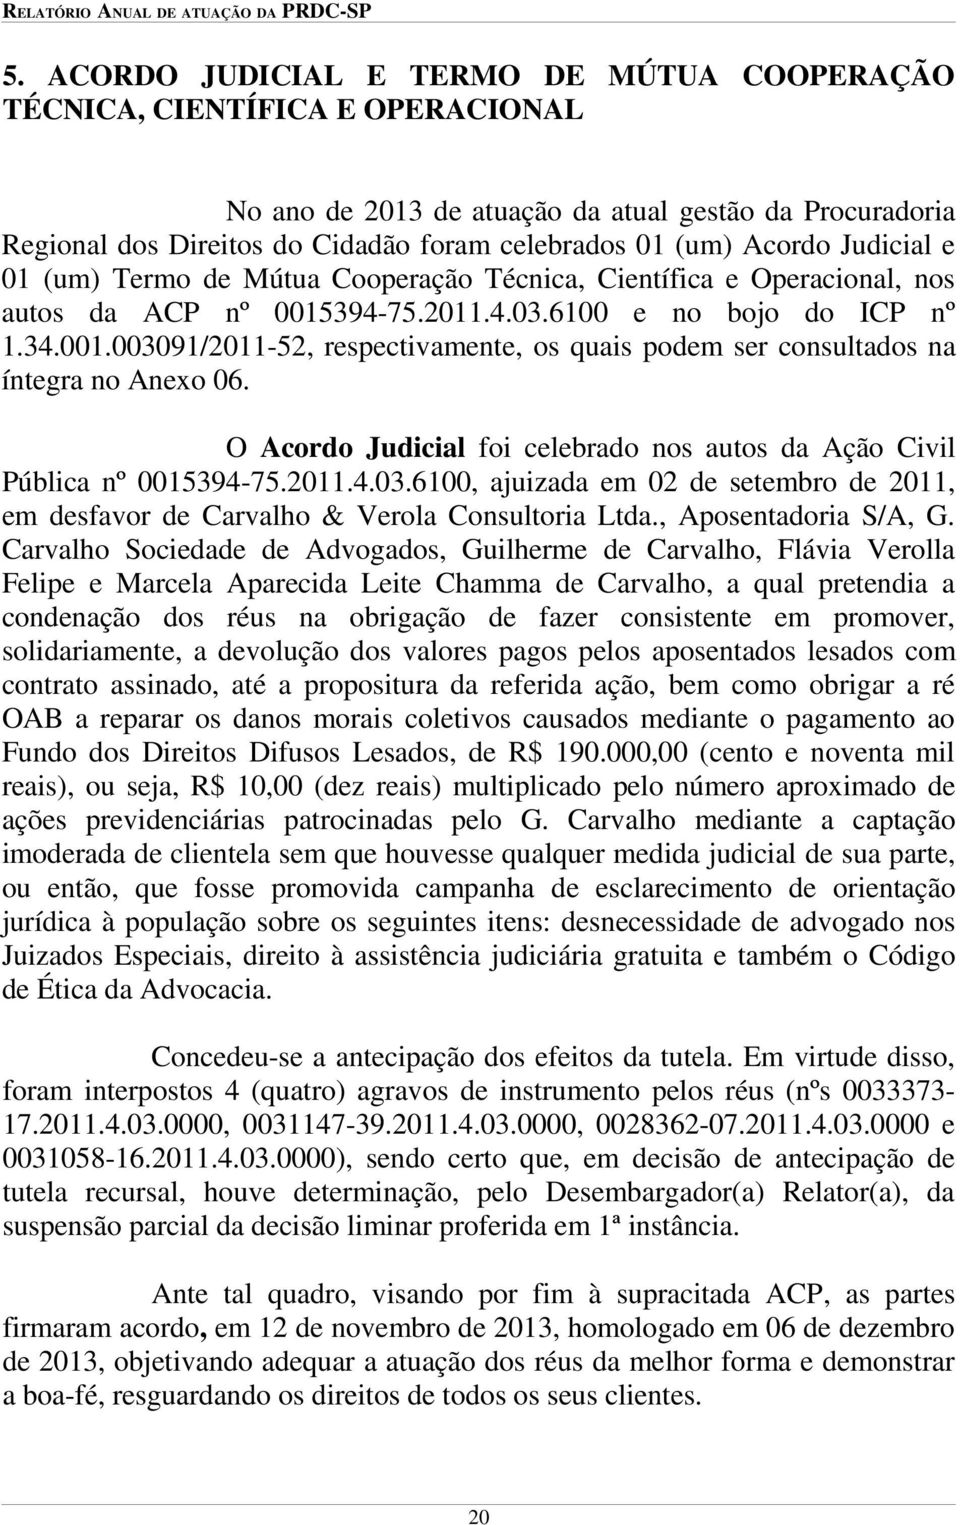 O Acordo Judicial foi celebrado nos autos da Ação Civil Pública nº 0015394-75.2011.4.03.6100, ajuizada em 02 de setembro de 2011, em desfavor de Carvalho & Verola Consultoria Ltda.